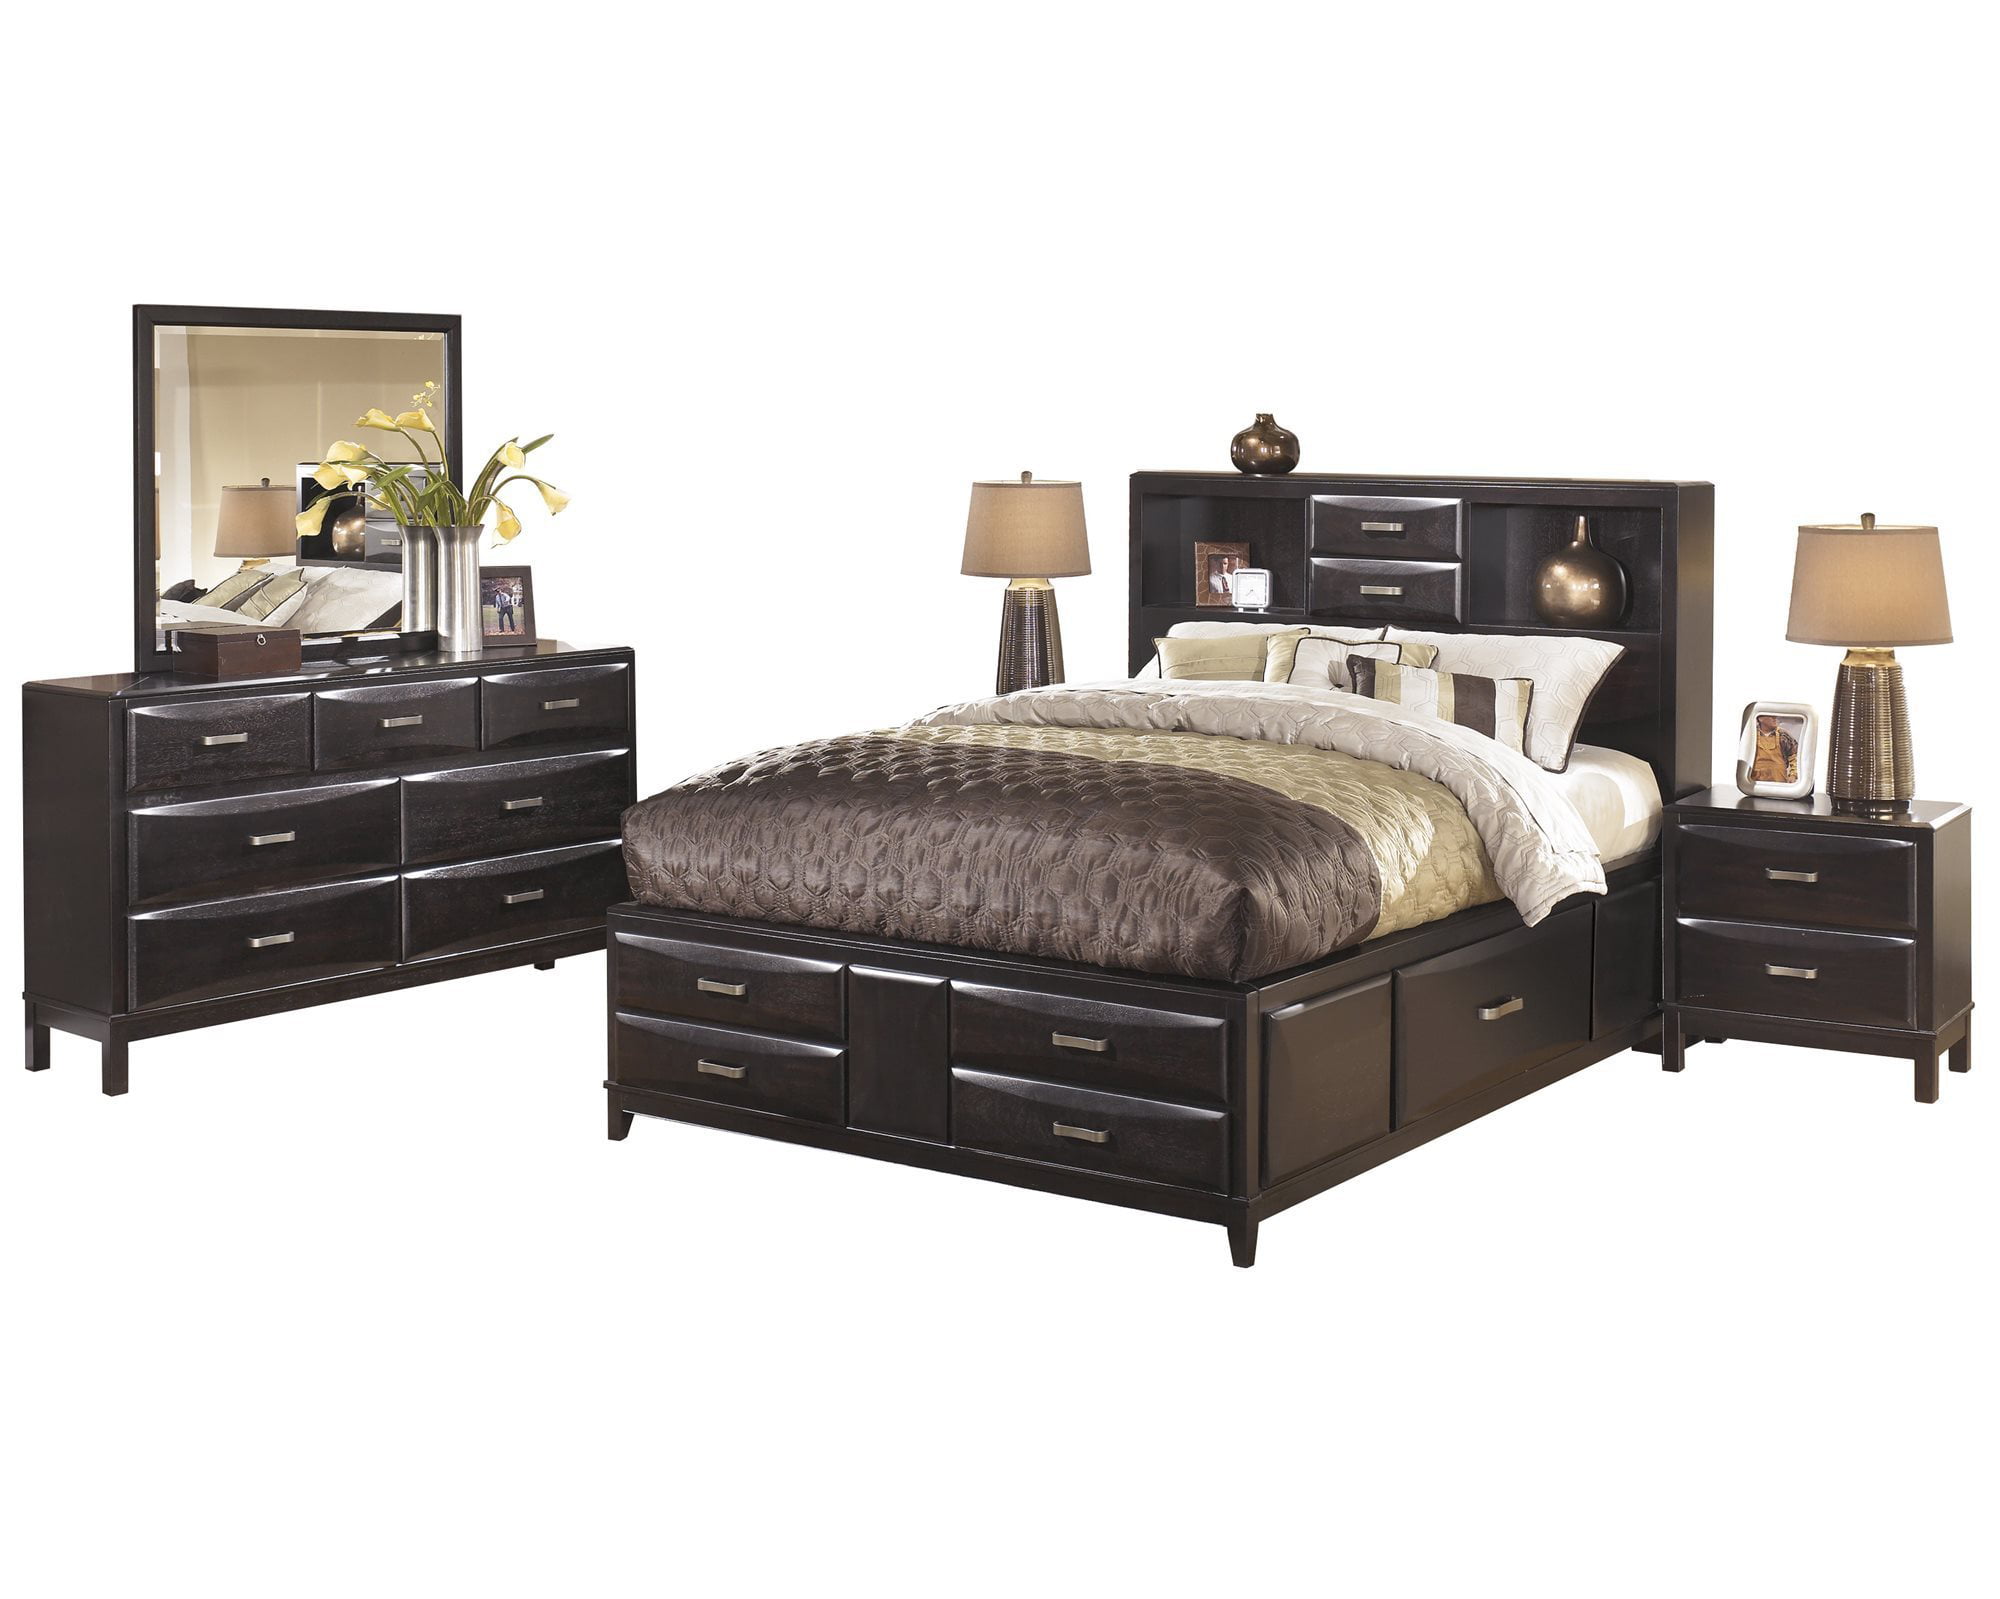 Ashley Furniture Kira 5 Pc Bedroom Set Queen Storage Bed Dresser Mirror 2 Nightstand Black Walmart Com Walmart Com